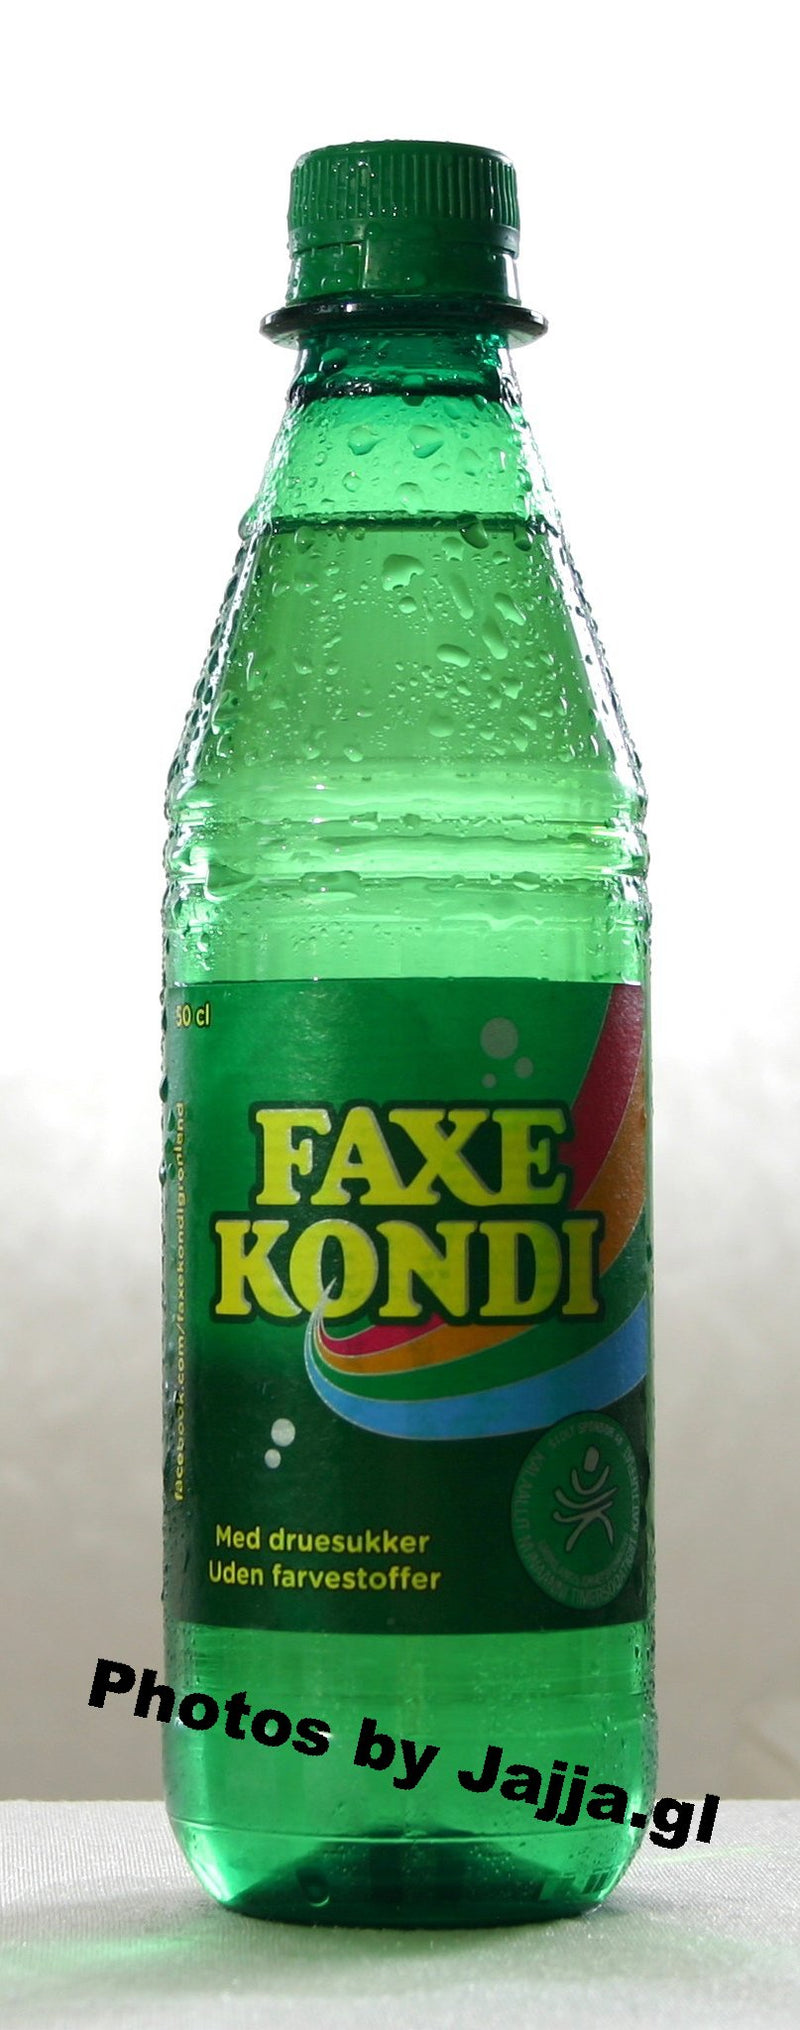 Kondi - Faxe, 50cl (inkl. pant)